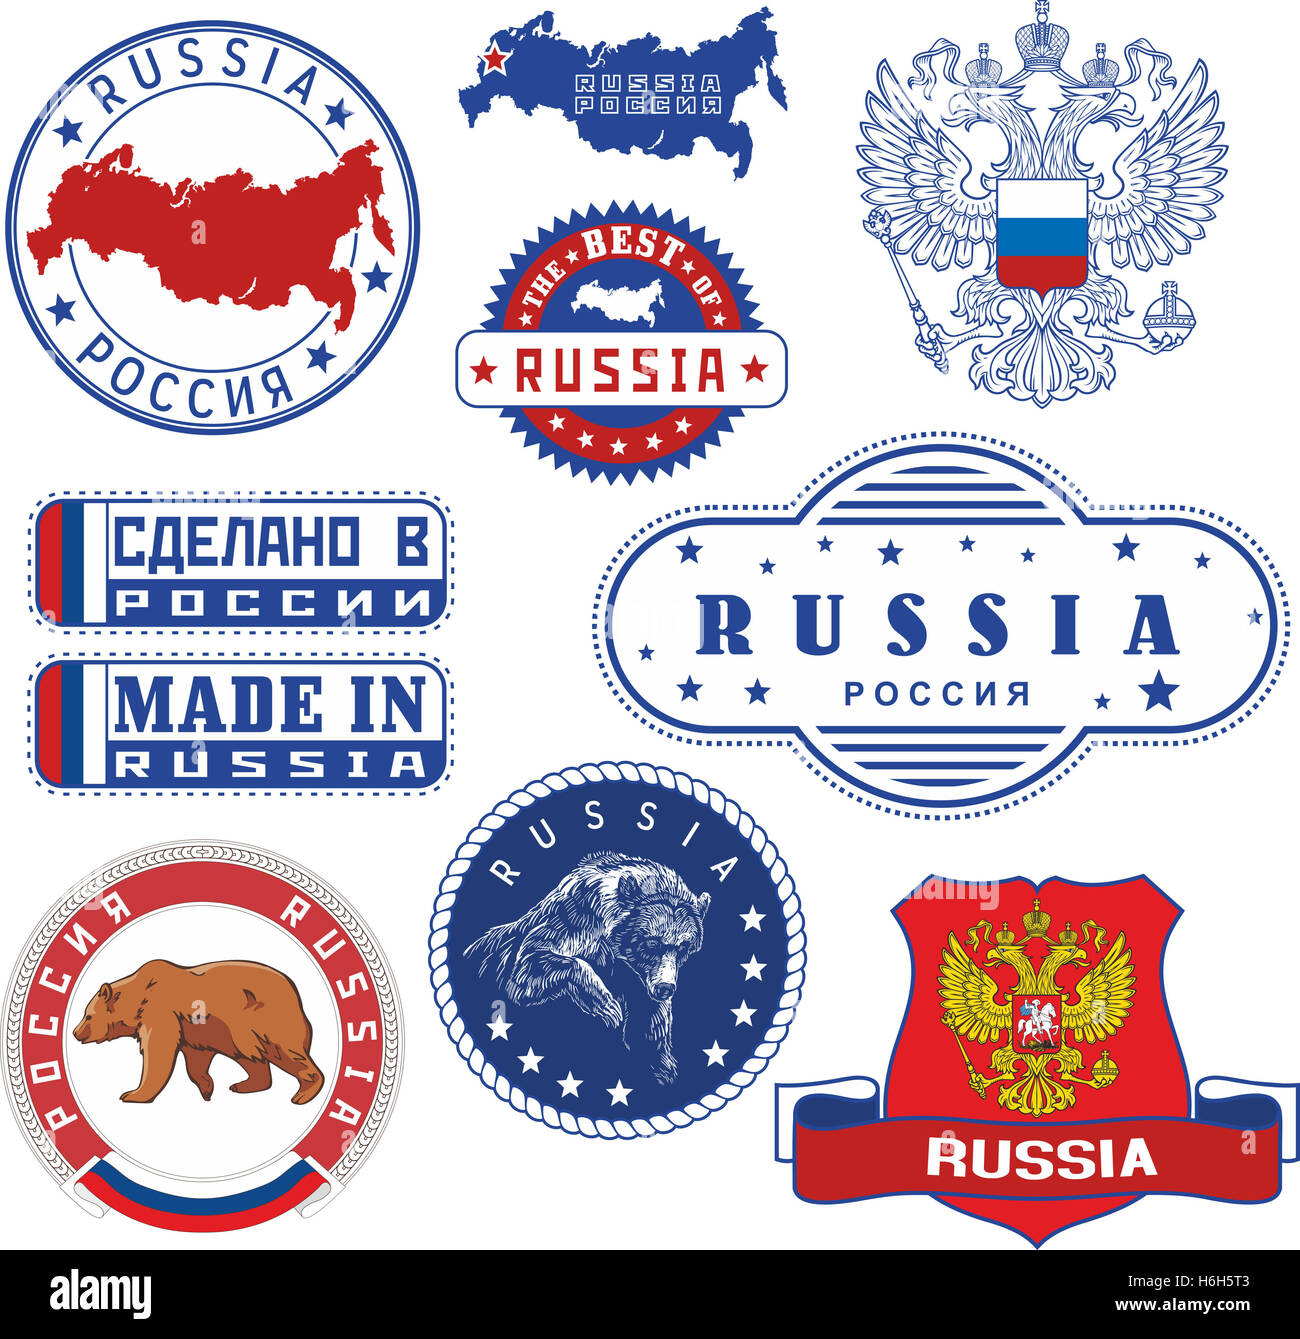 La Russie. Ensemble de timbres générique et signes y compris les éléments des armoiries russes avec double tête, la Russie carte muette, porte une Banque D'Images